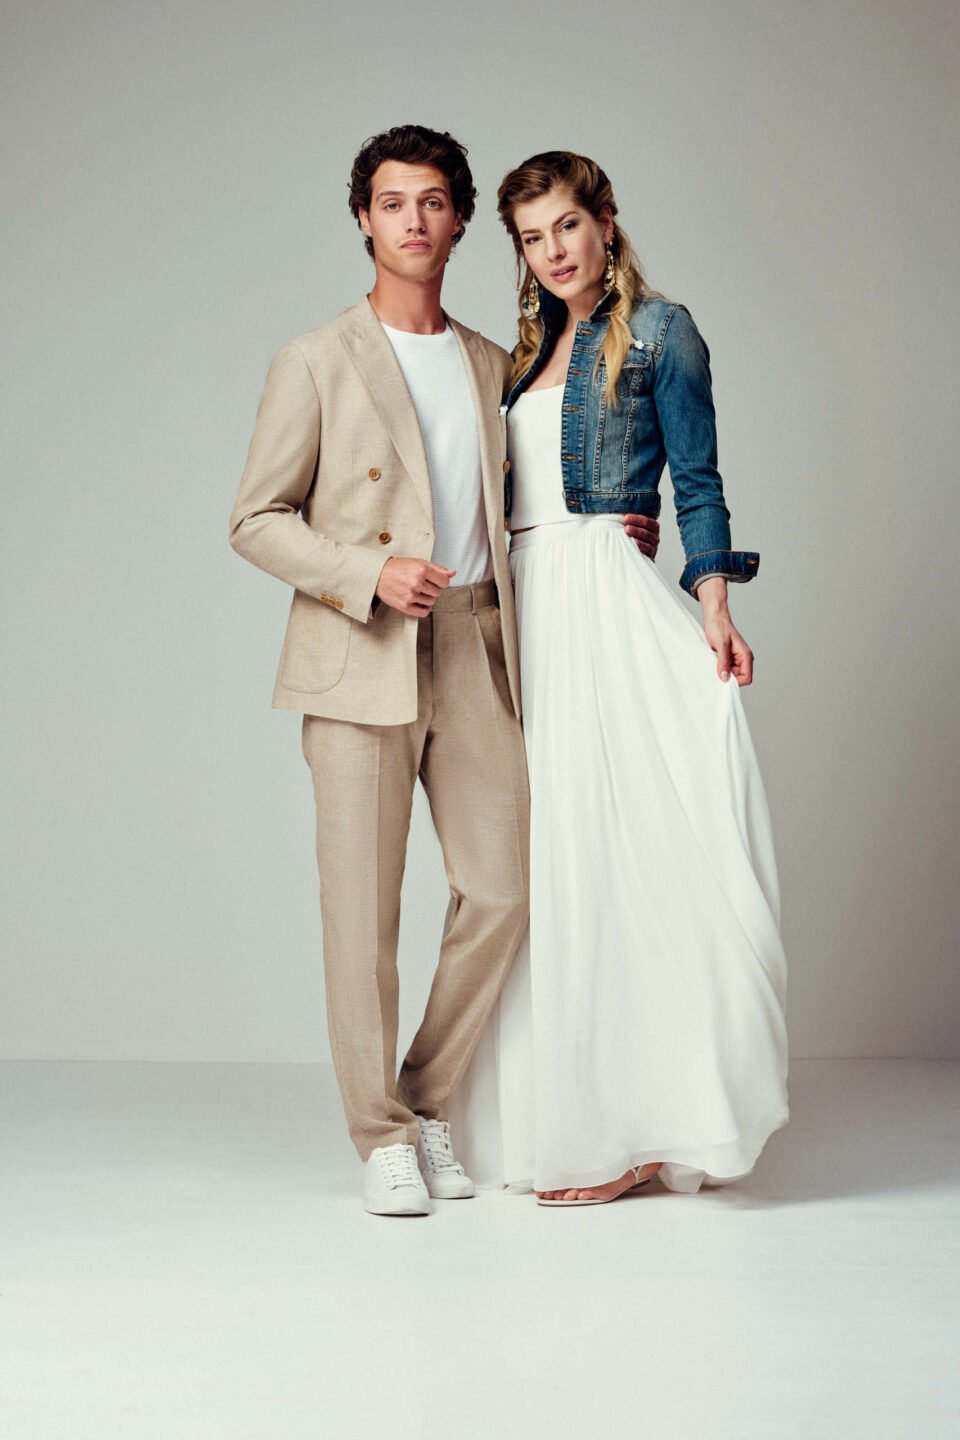 Braut im Zweiteiler mit Jeansjacke mit Bräutigam in sandfarbenen Anzug